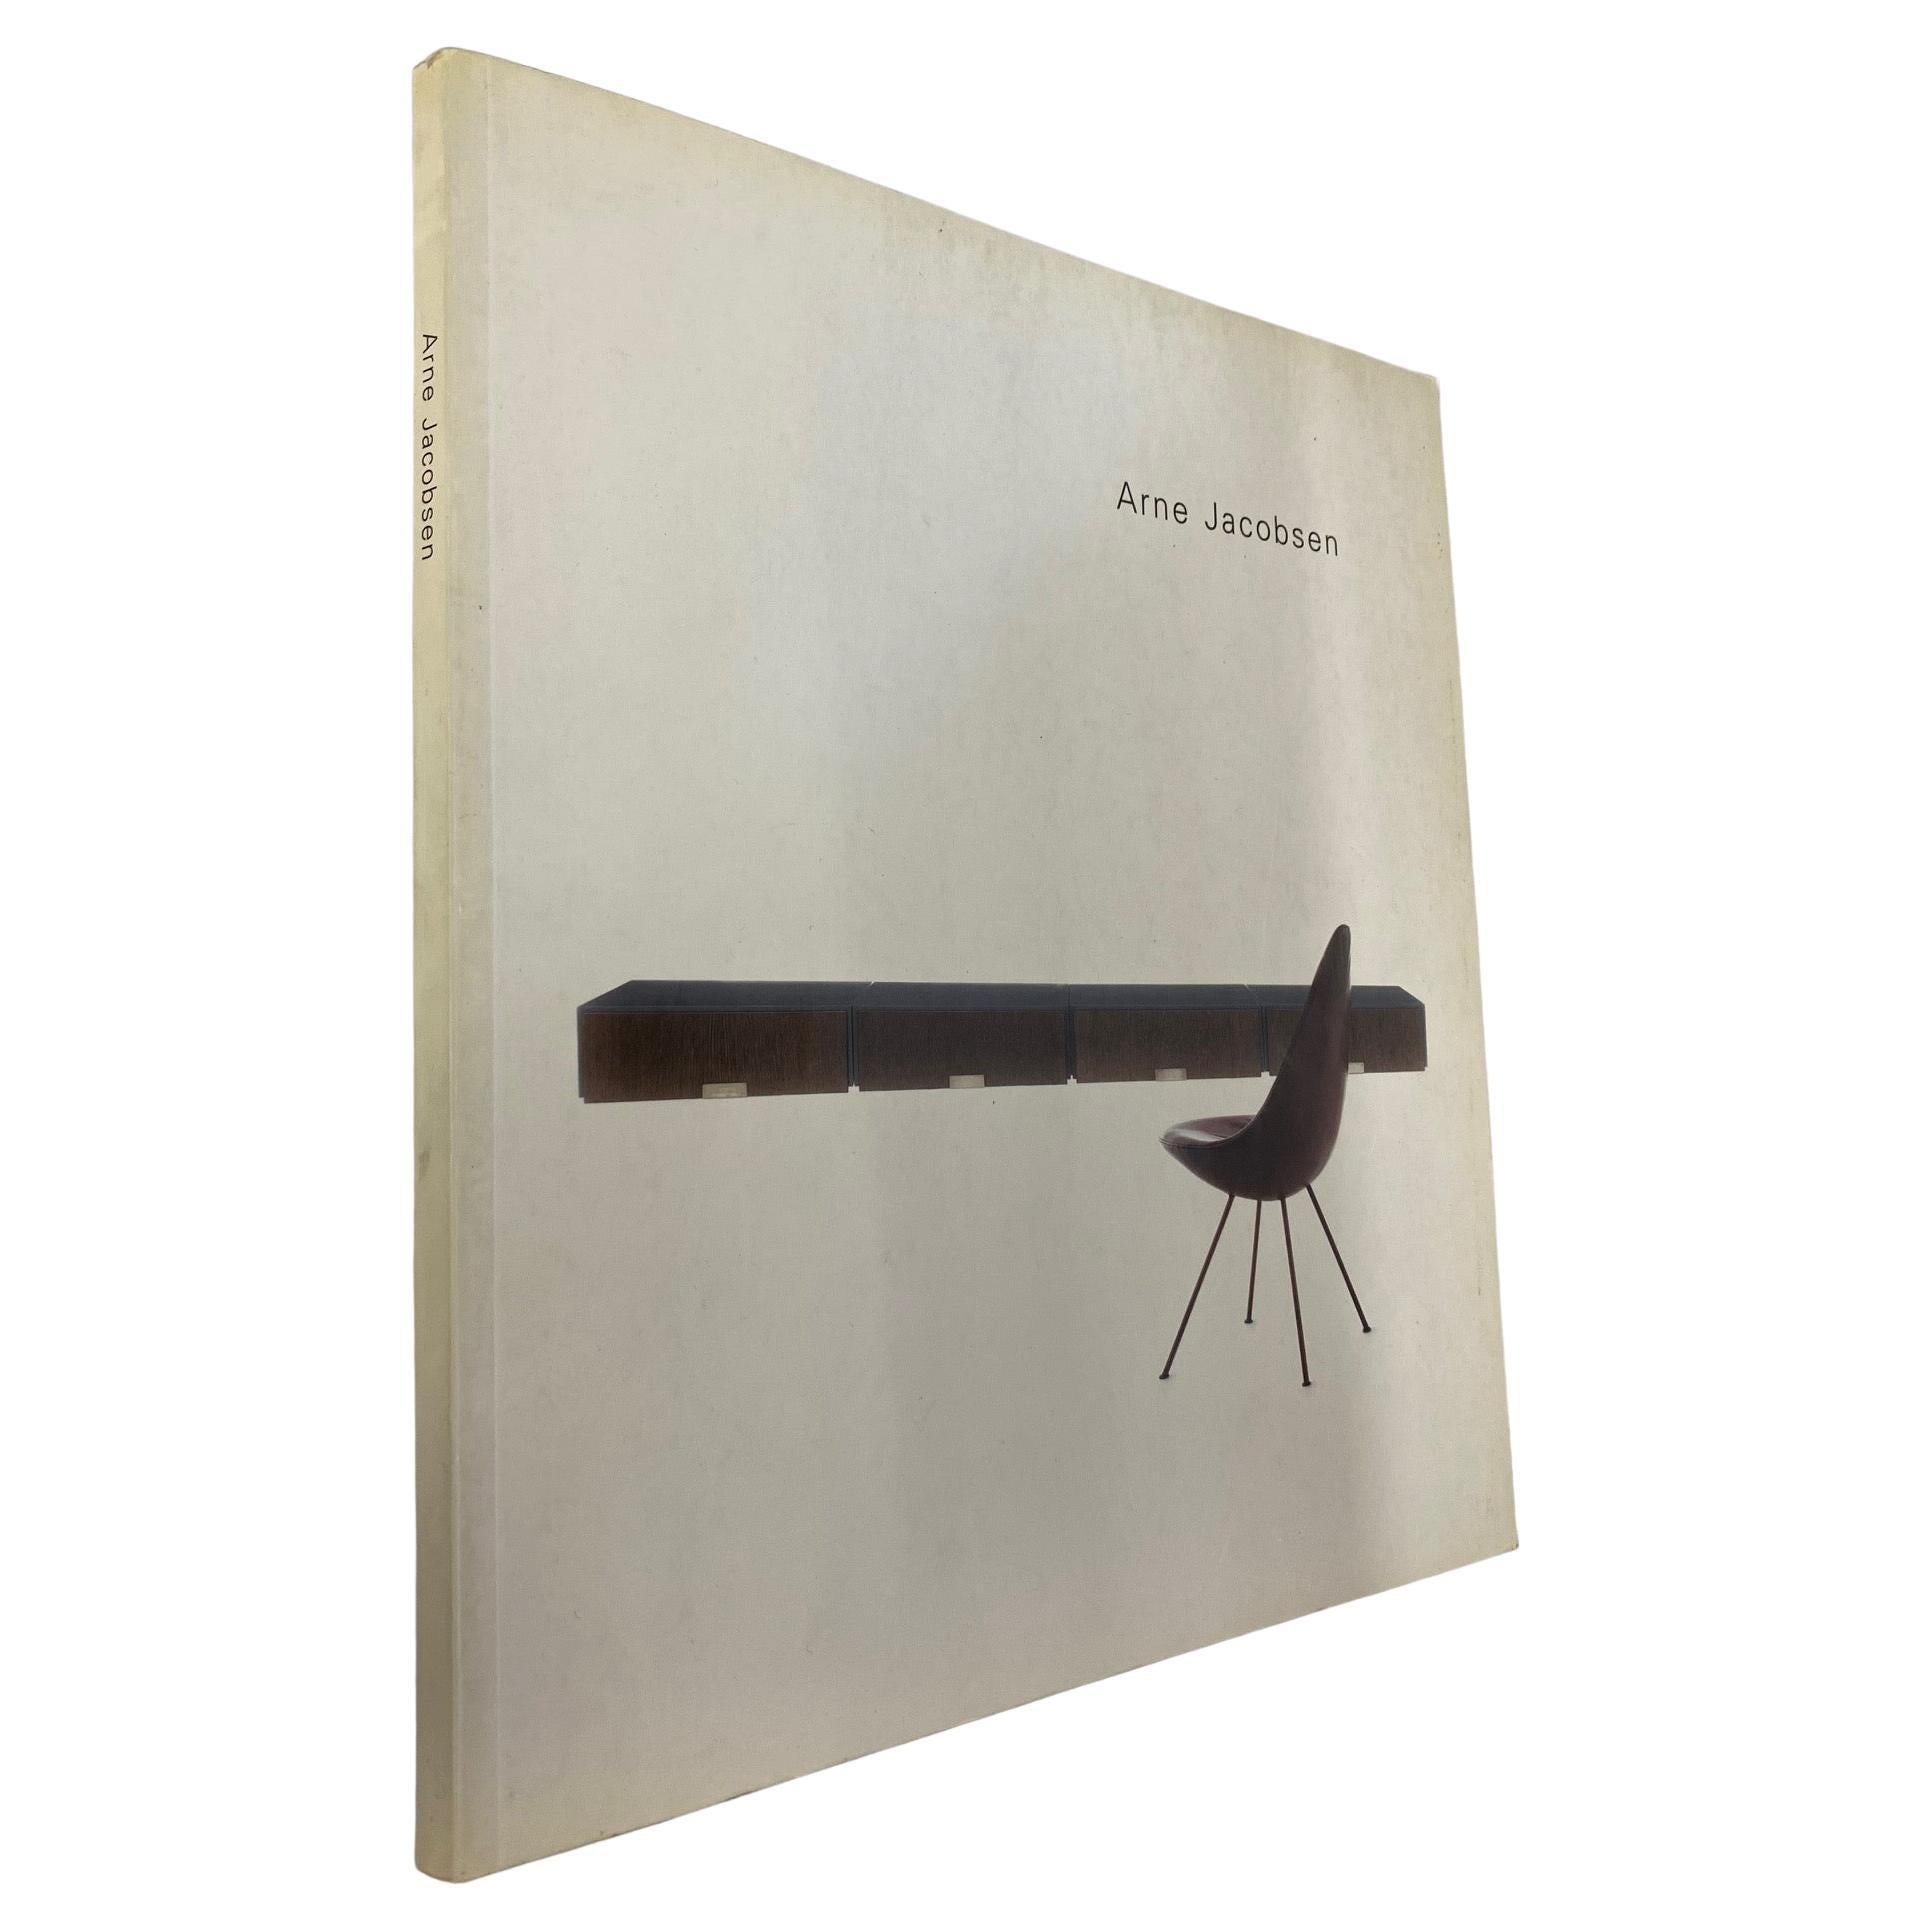 Arne Jacobsen (livre)